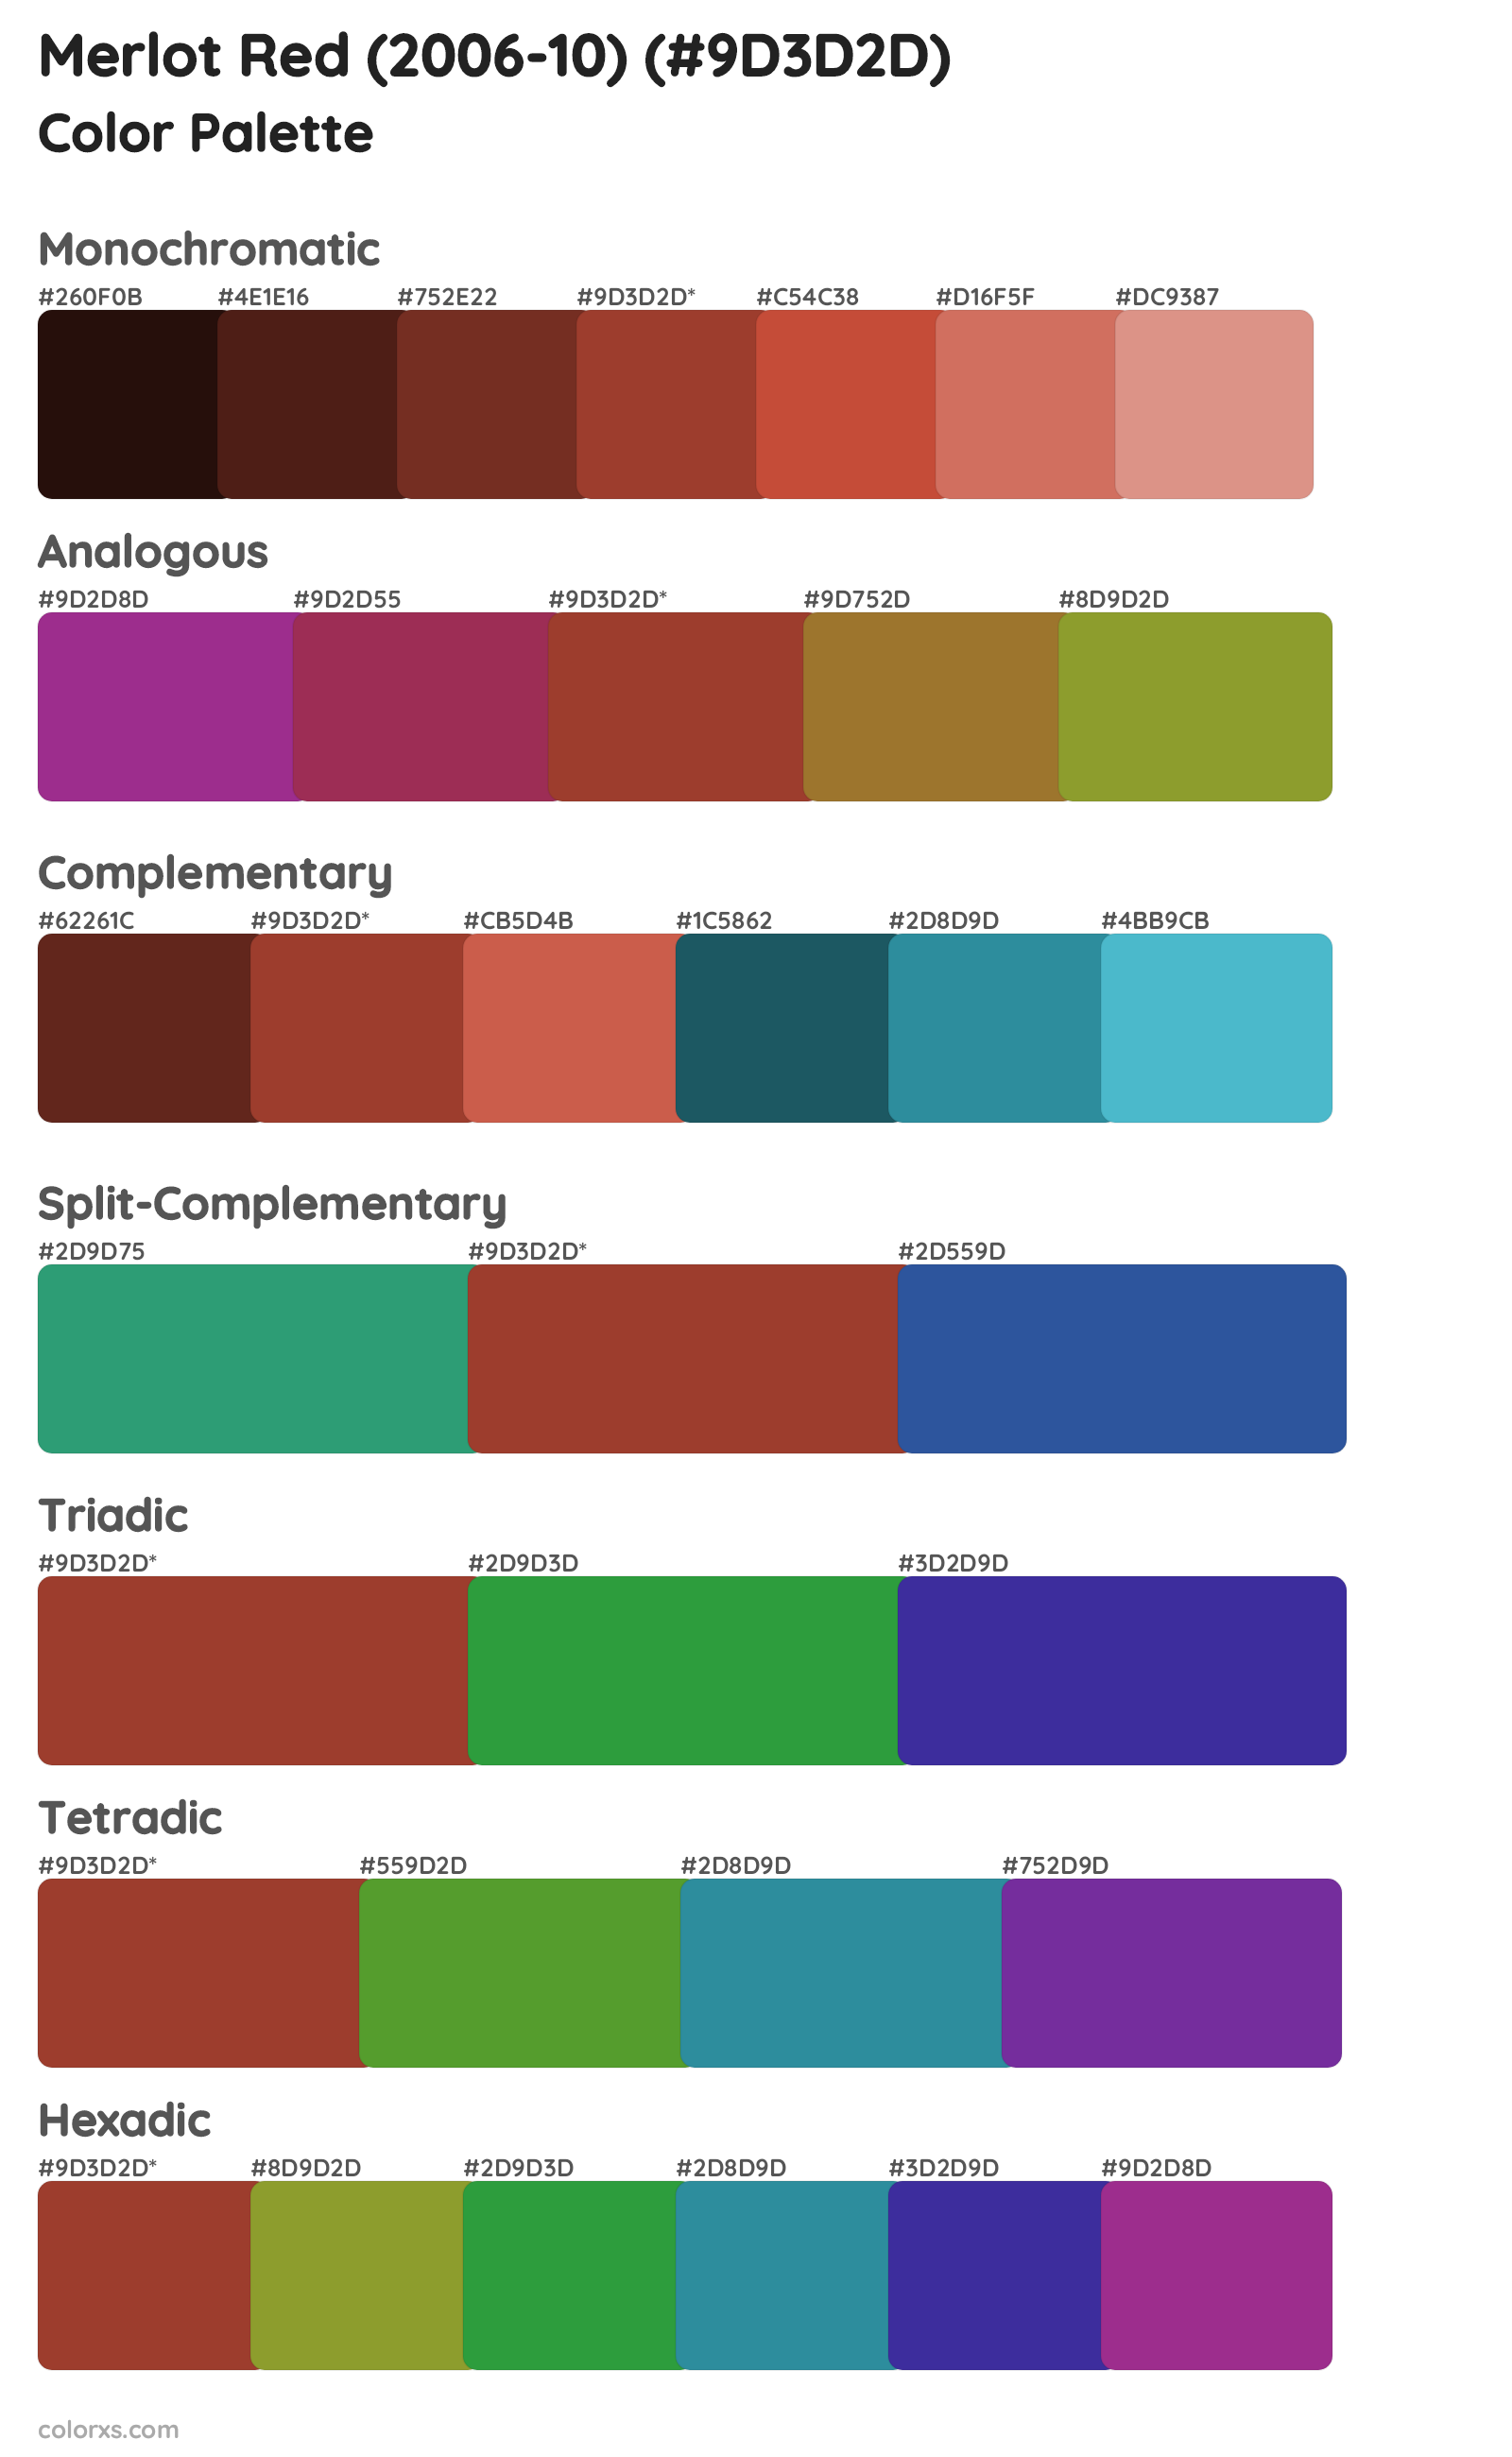 Merlot Red (2006-10) Color Scheme Palettes